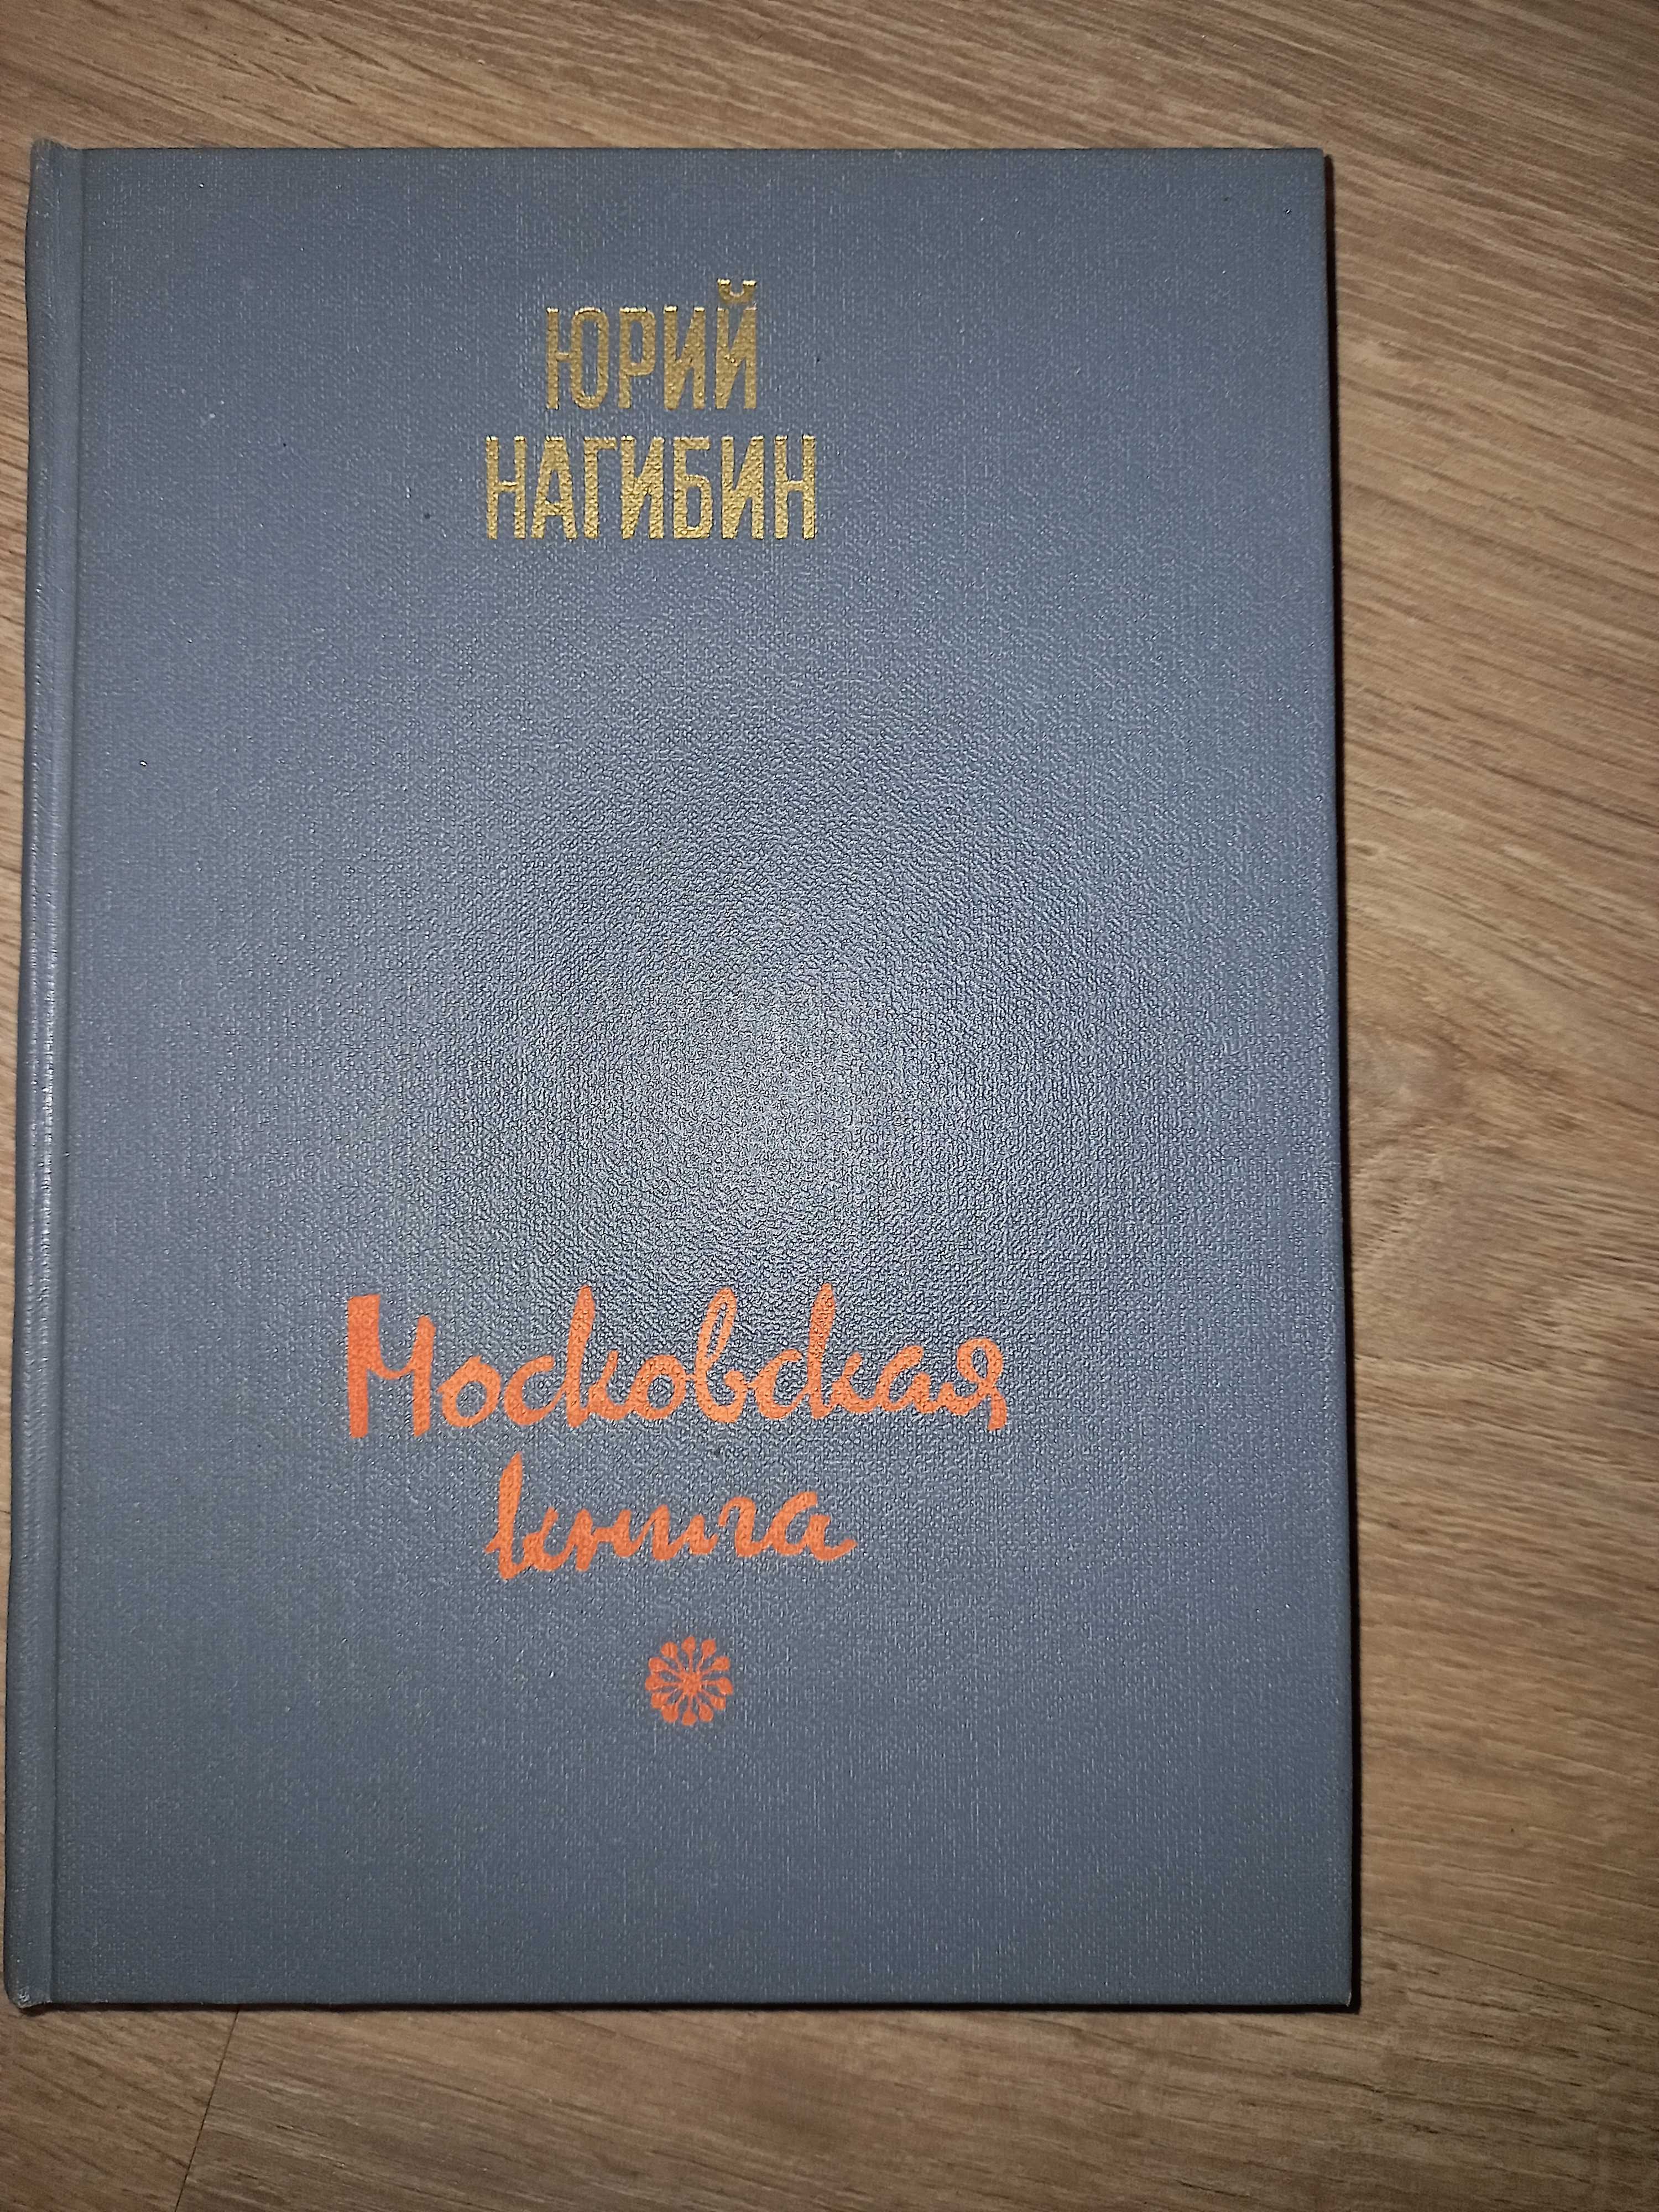 Юрий Нагибин "Московская книга " изд.1985г